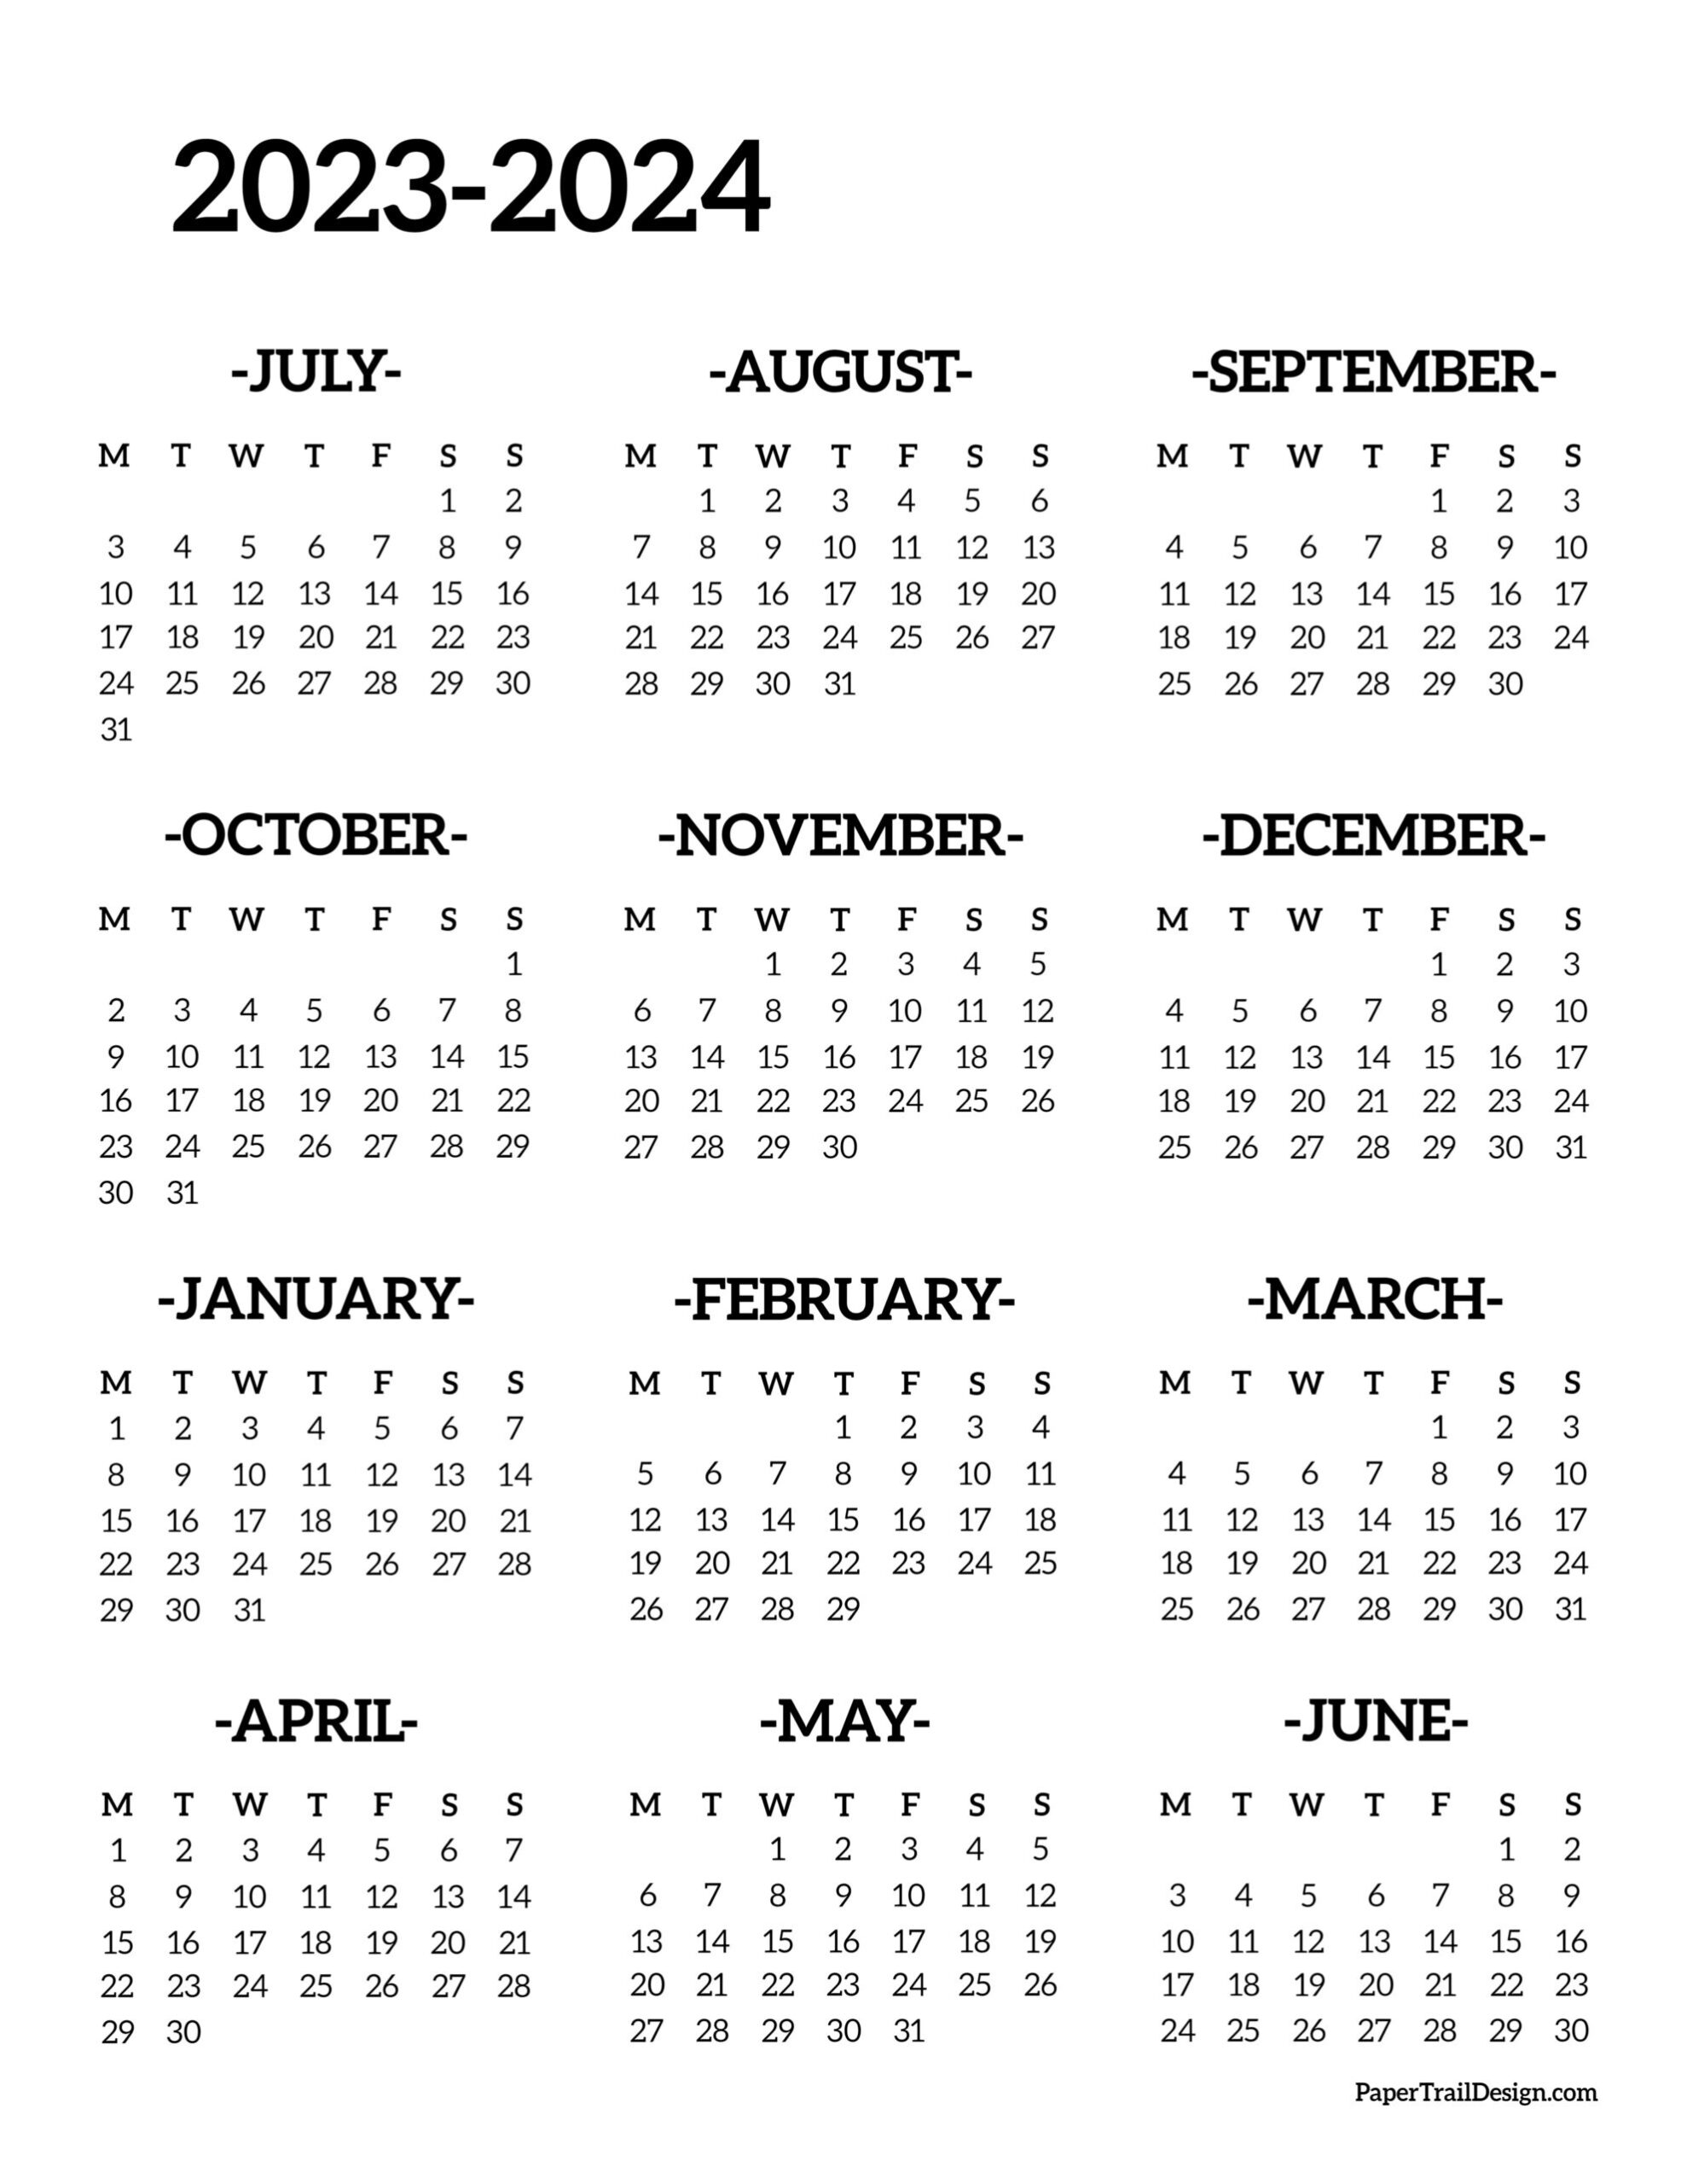 2023-2024 School Year Calendar Free Printable - Paper Trail Design in Calendar June 2023 - May 2024